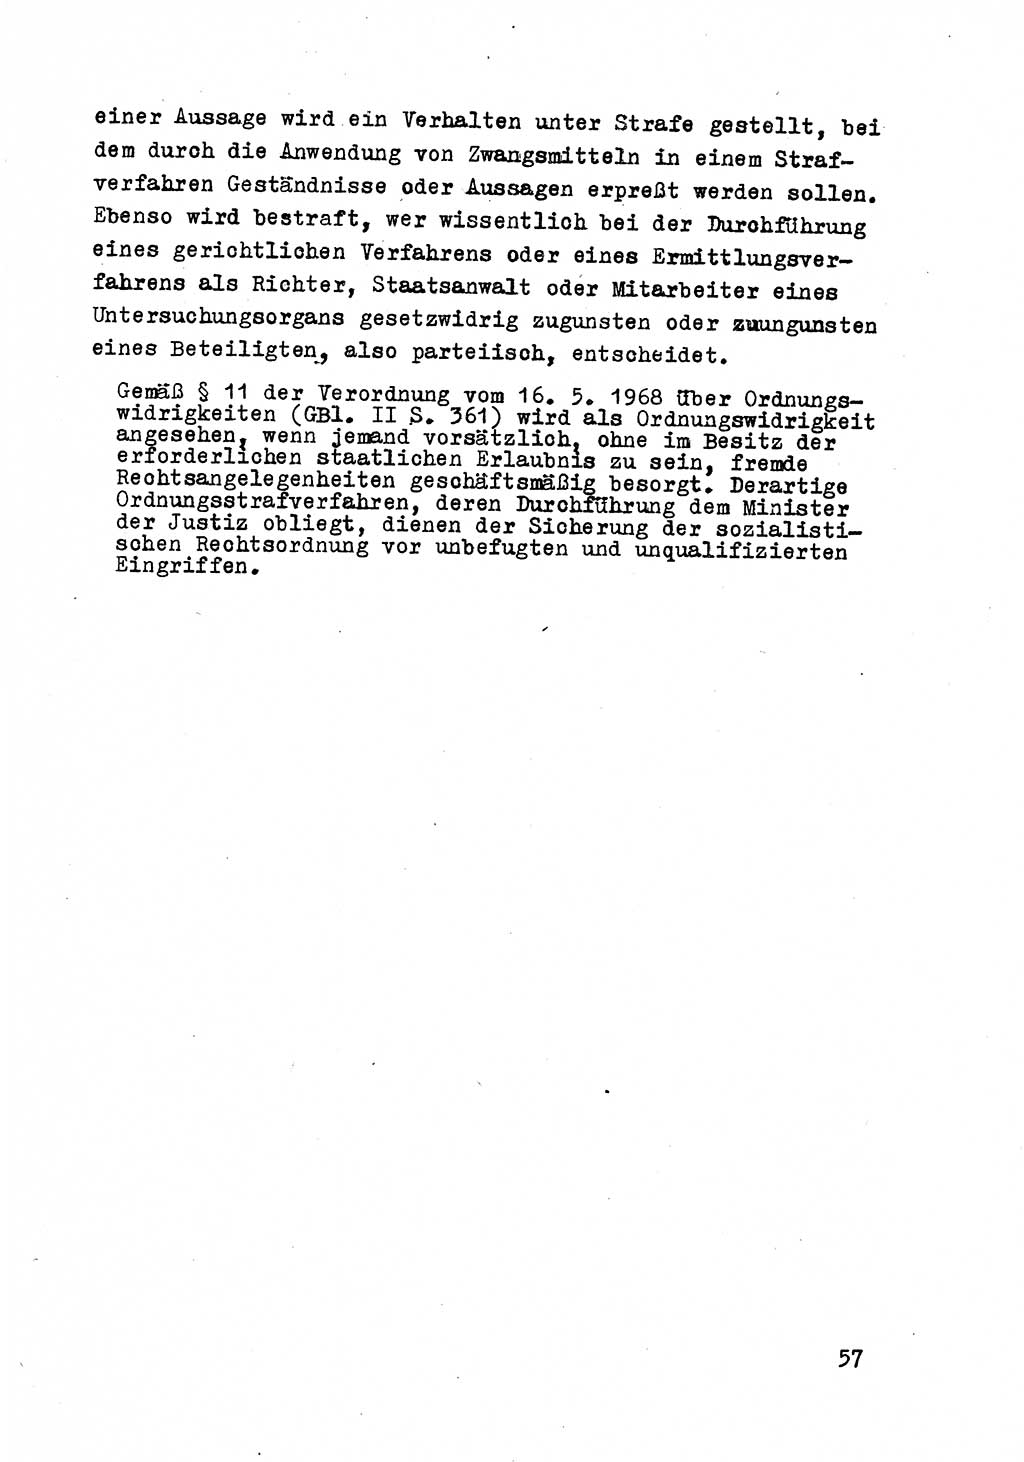 Strafrecht der DDR (Deutsche Demokratische Republik), Besonderer Teil, Lehrmaterial, Heft 8 1970, Seite 57 (Strafr. DDR BT Lehrmat. H. 8 1970, S. 57)